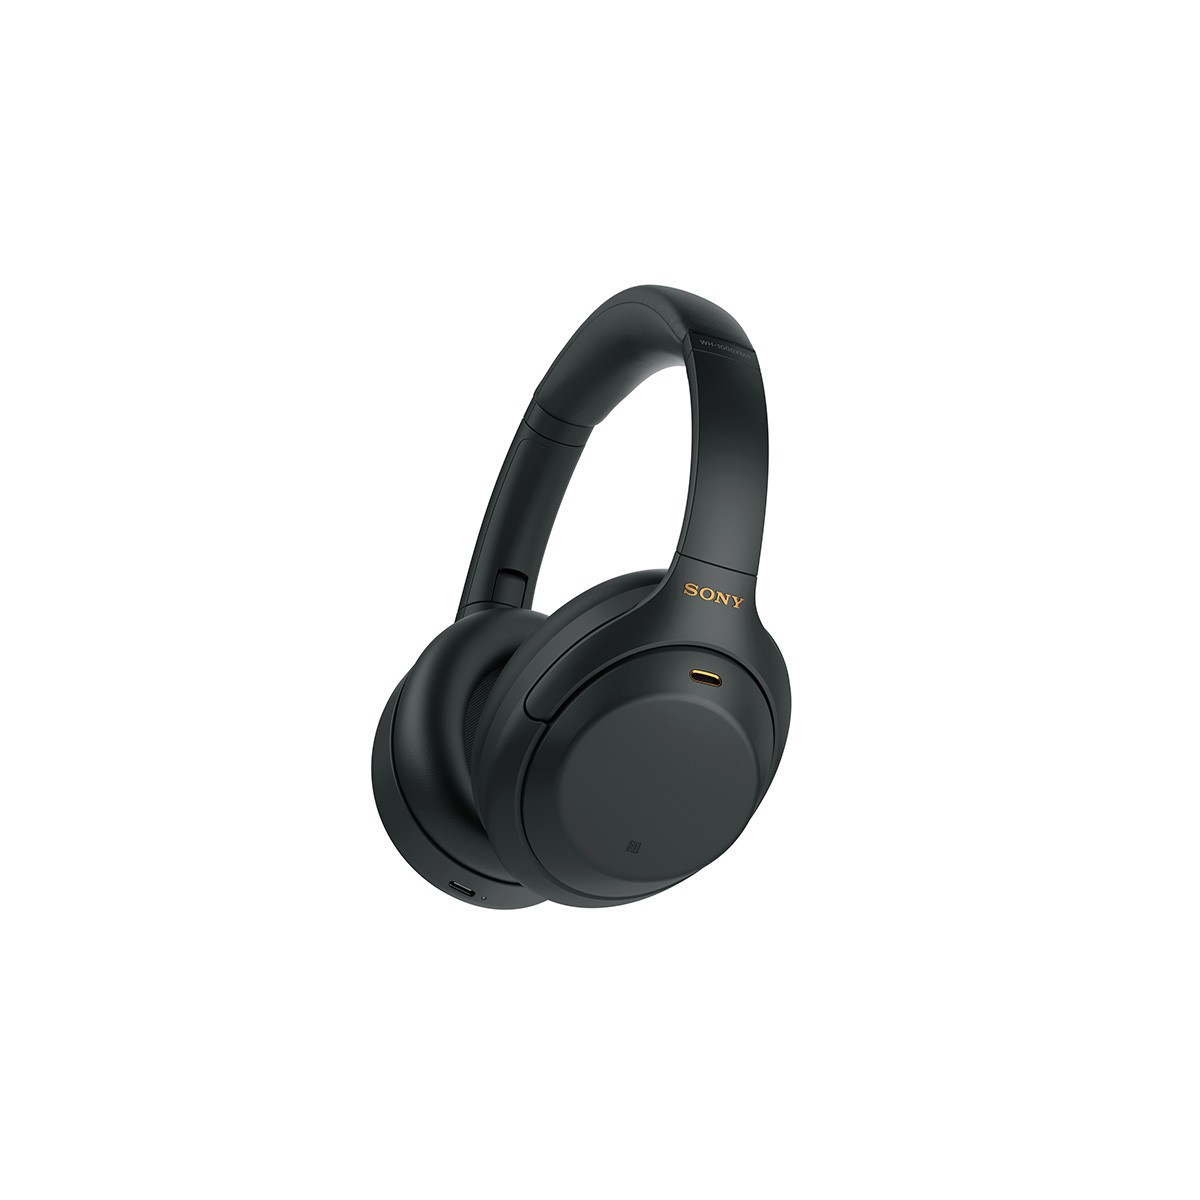 Le très recherché casque Bluetooth Sony WH-1000XM4 est en promotion